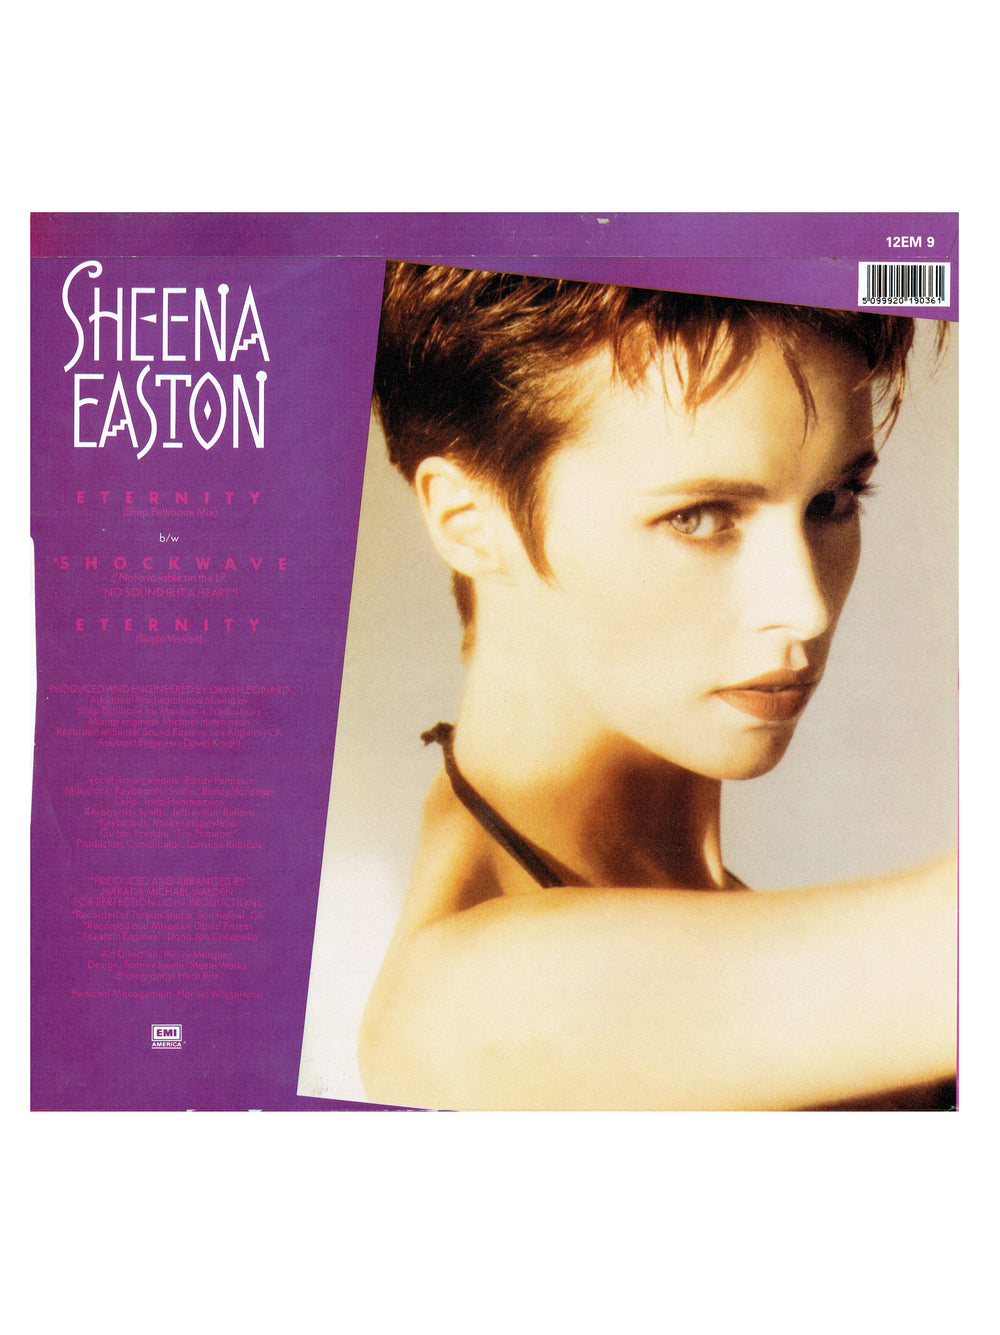 Sheena Easton Eternity 12 inch Single Vinyl 1987 Release Written By Prince